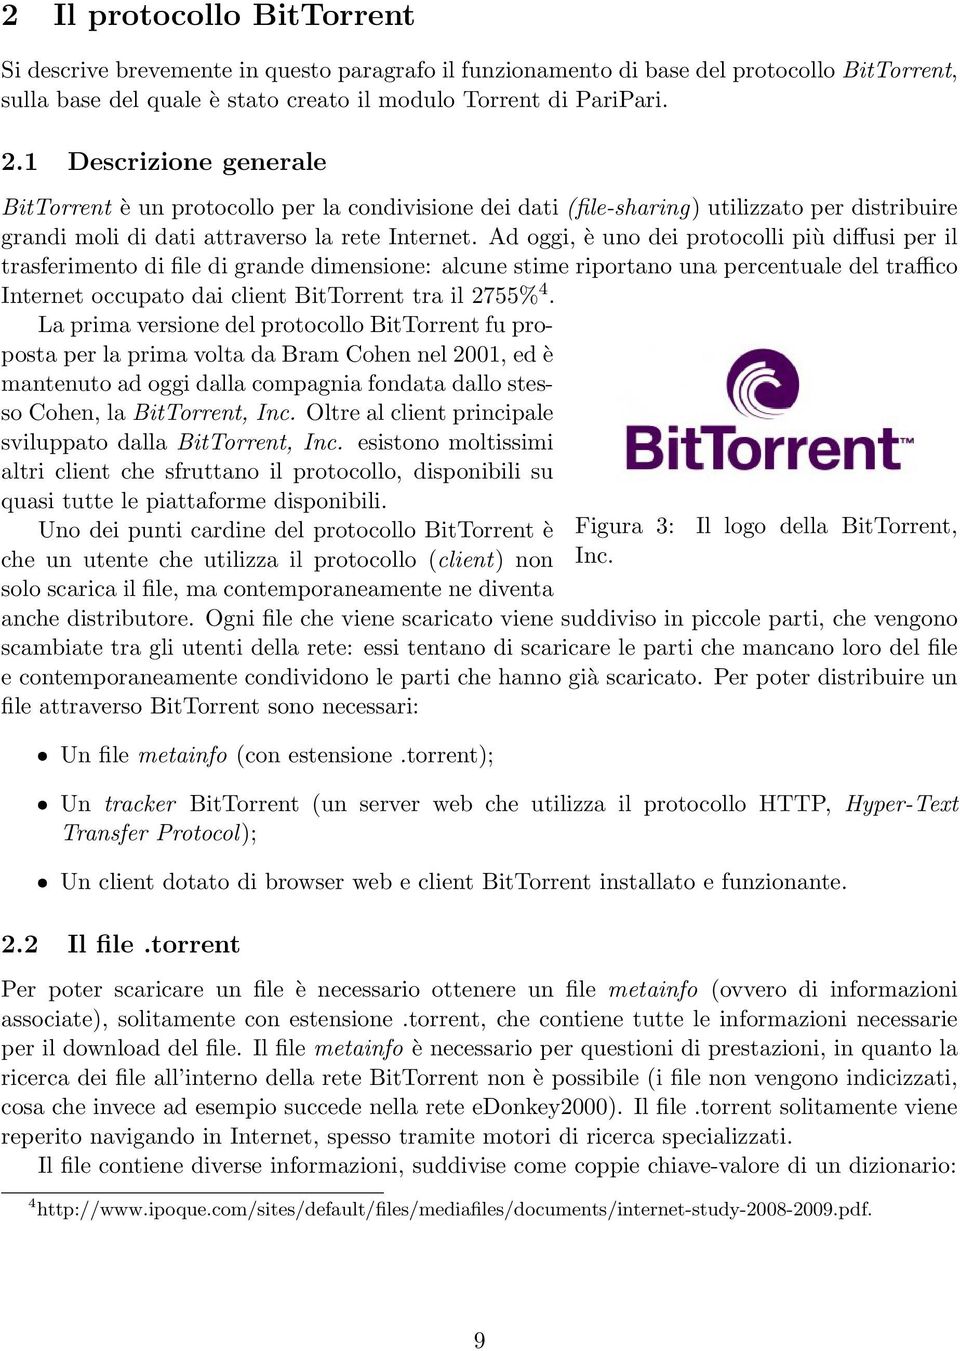 Ad oggi, è uno dei protocolli più diffusi per il trasferimento di file di grande dimensione: alcune stime riportano una percentuale del traffico Internet occupato dai client BitTorrent tra il 2755% 4.